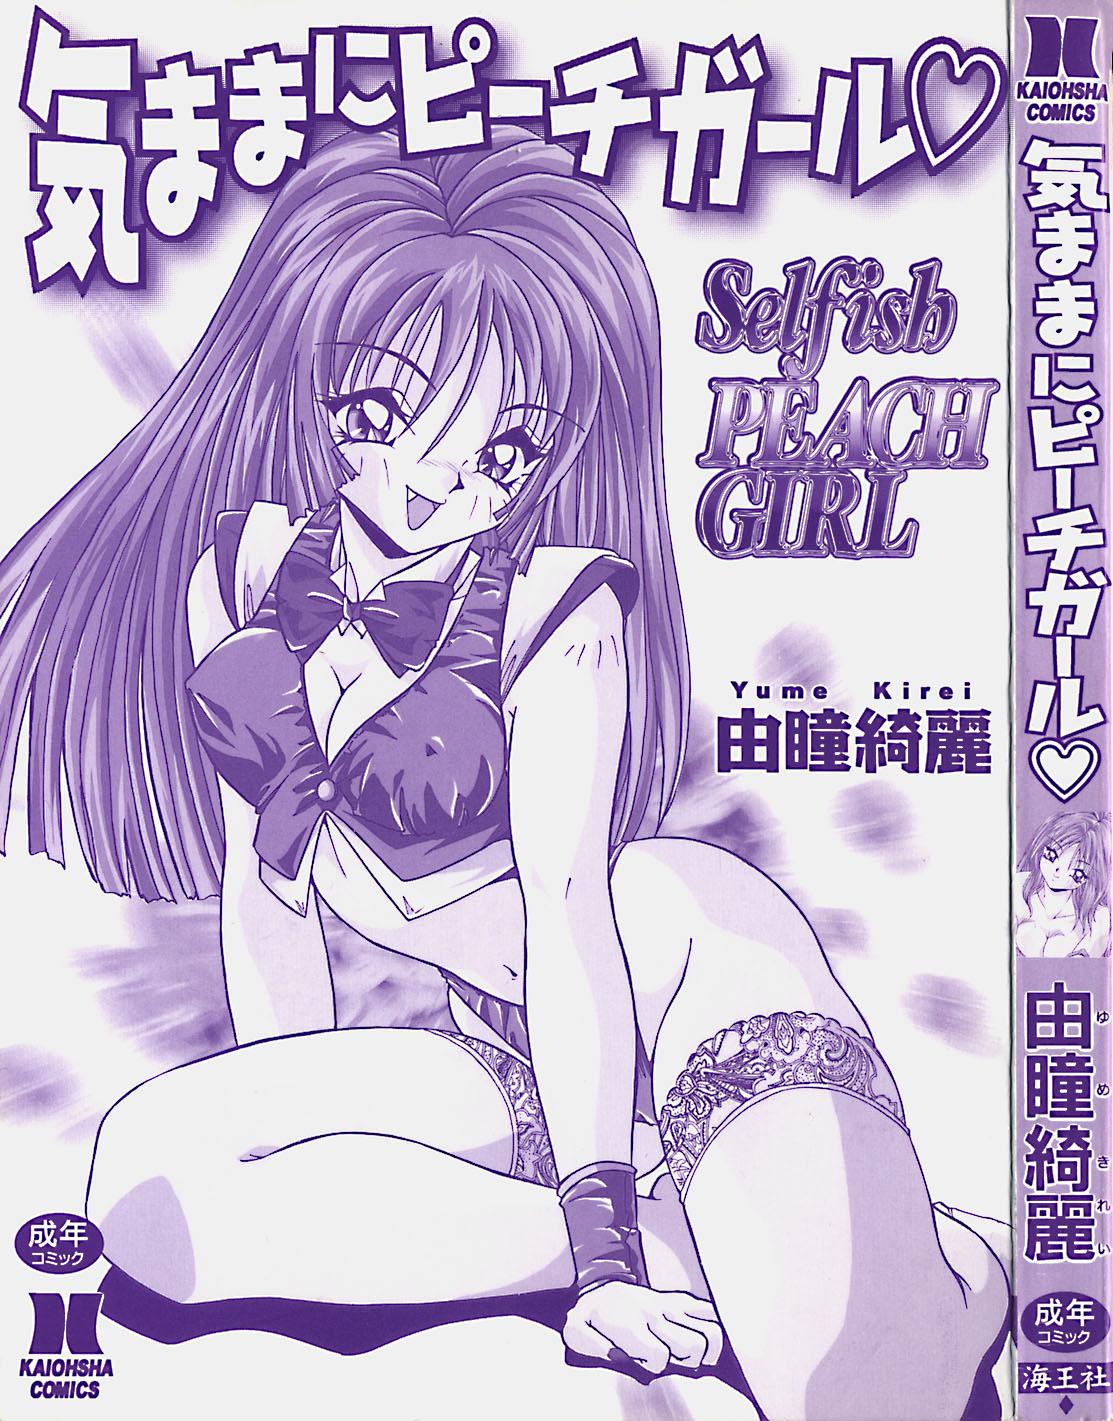 Reversecowgirl Kimama ni Peach Girl - Selfish Peach Girl  - Page 4